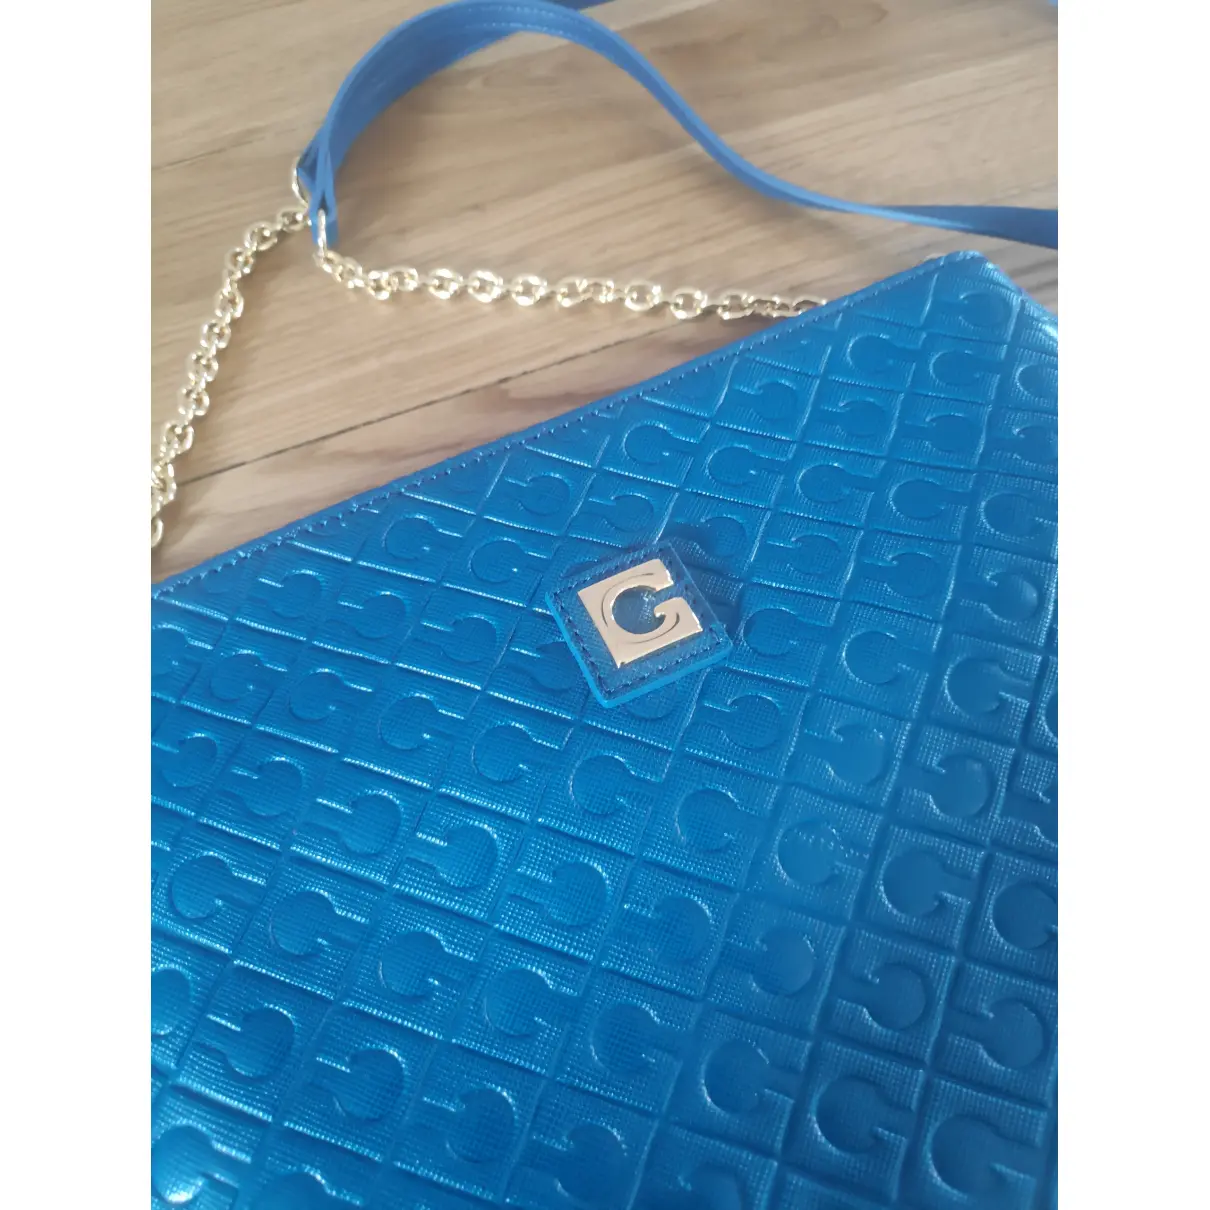 Buy Gherardini Leather handbag online